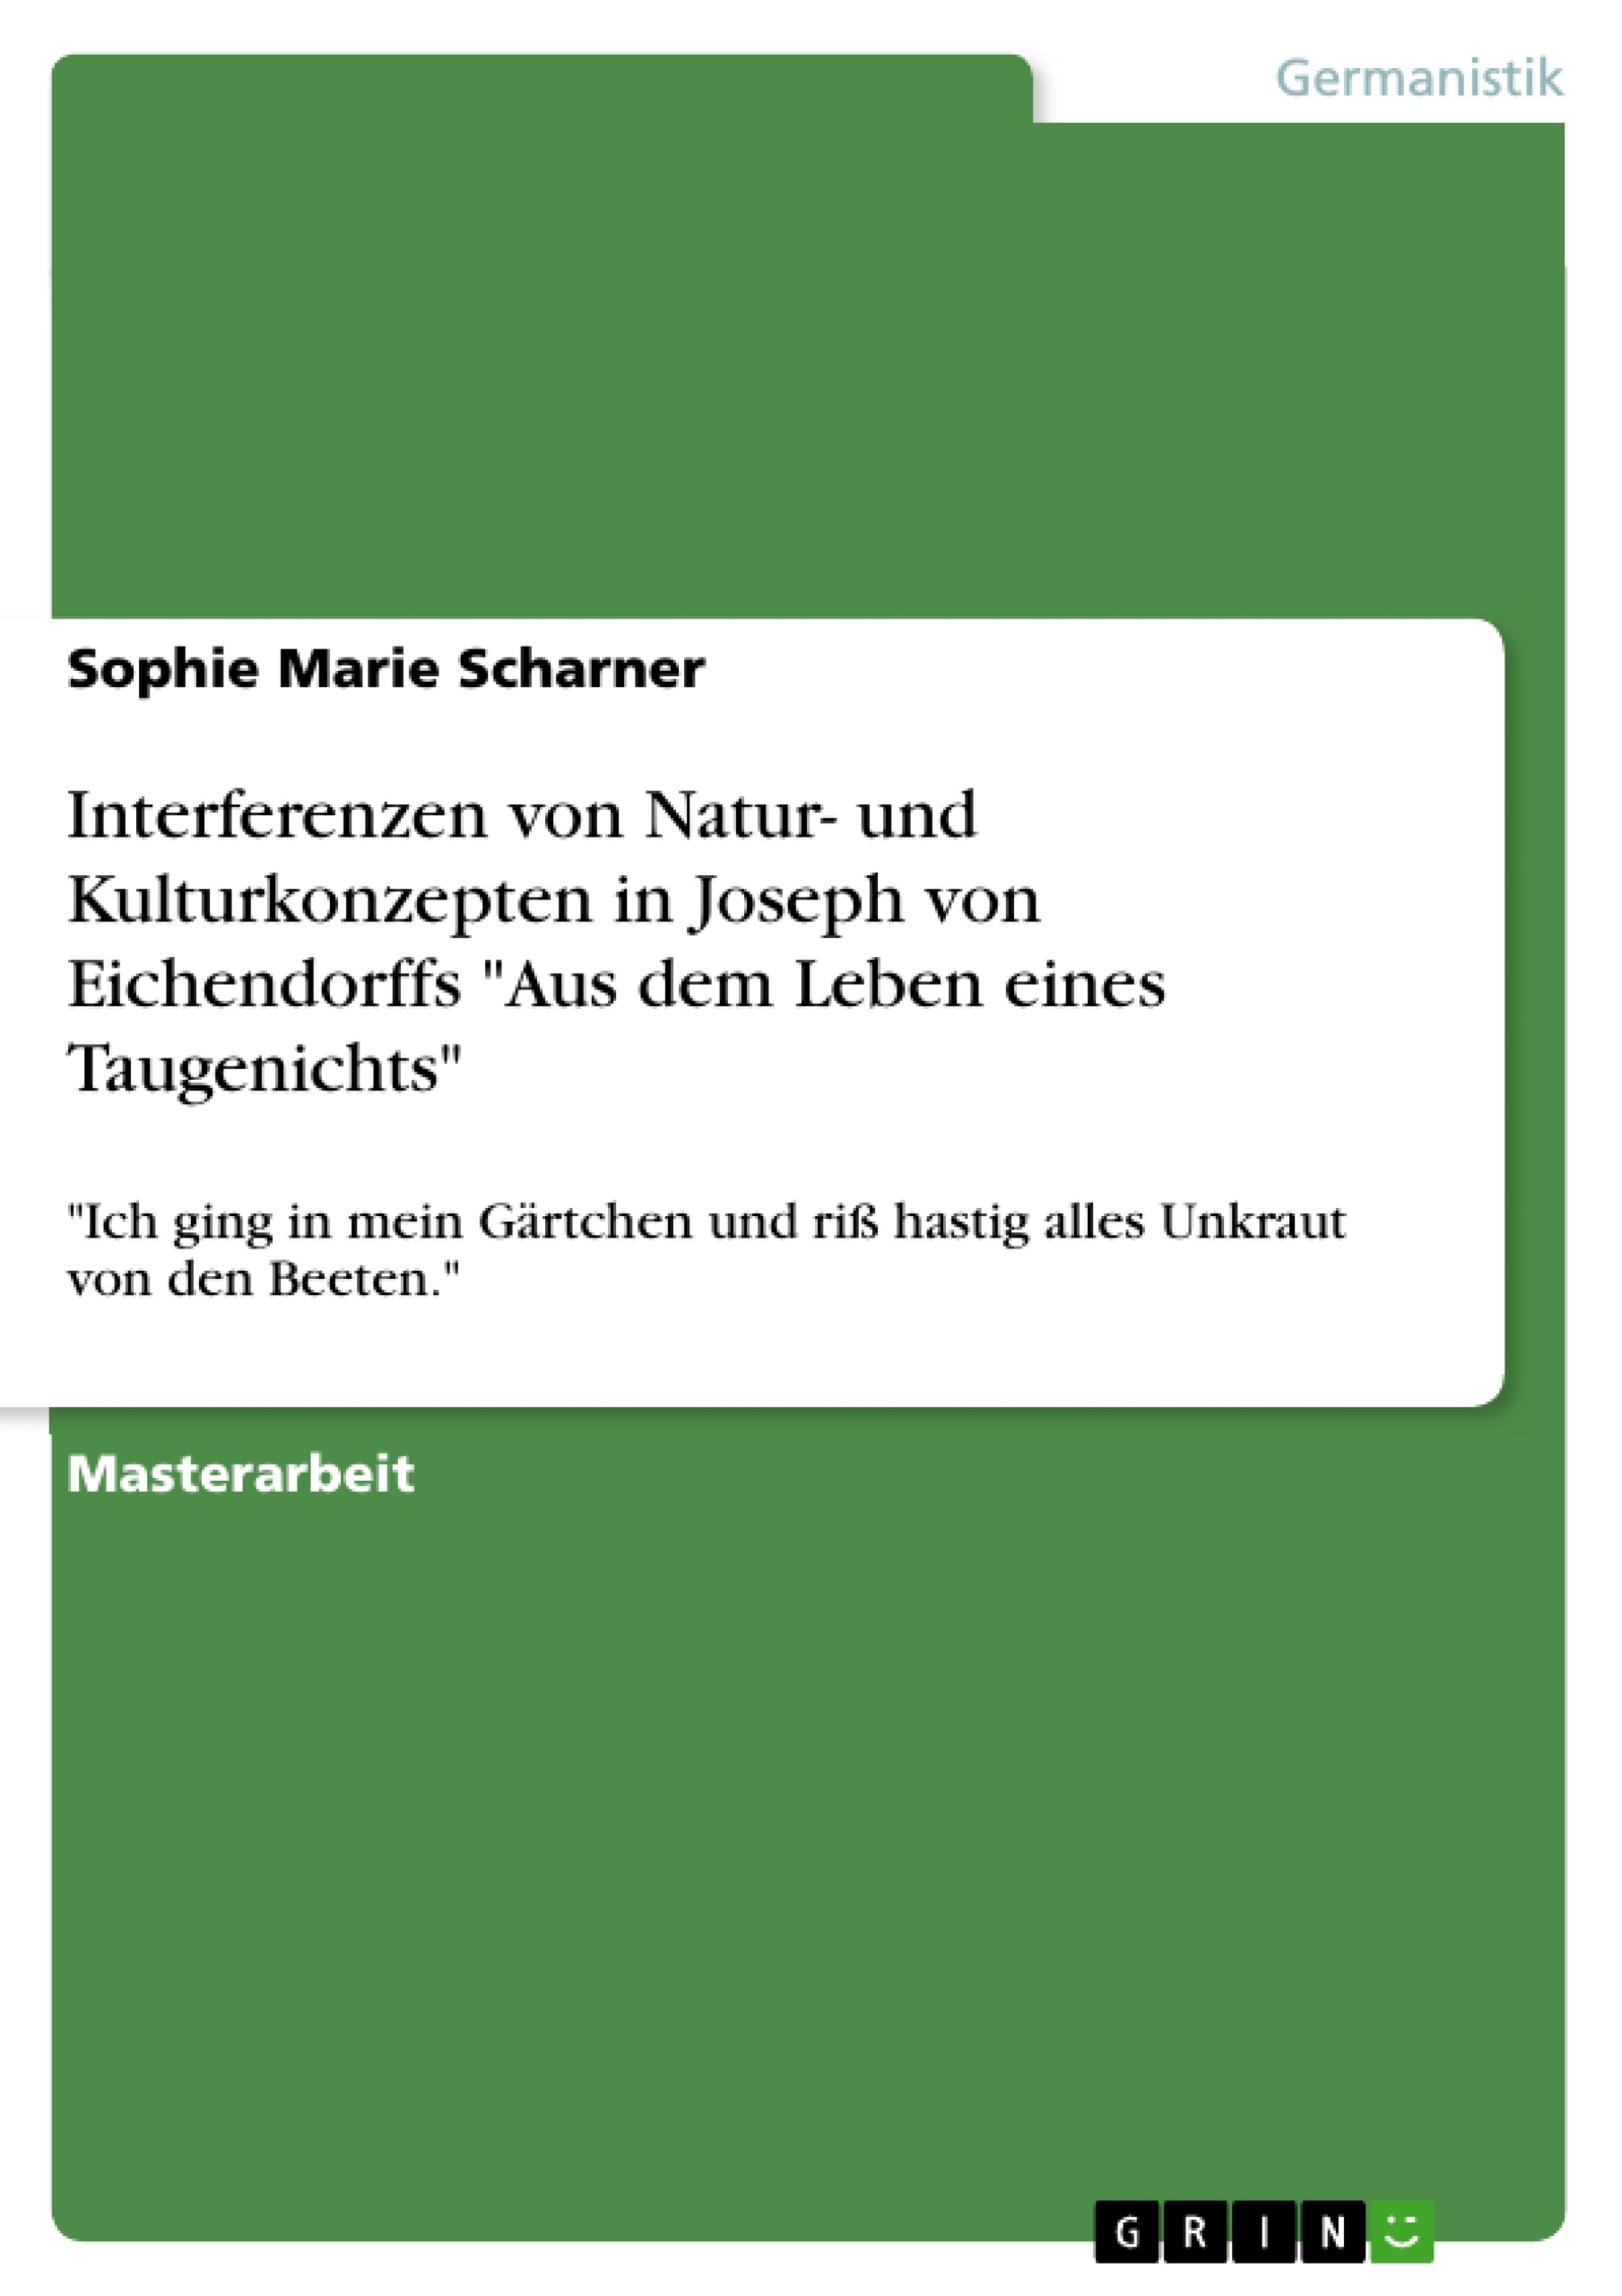 Título: Interferenzen von Natur- und Kulturkonzepten in Joseph von Eichendorffs "Aus dem Leben eines Taugenichts"